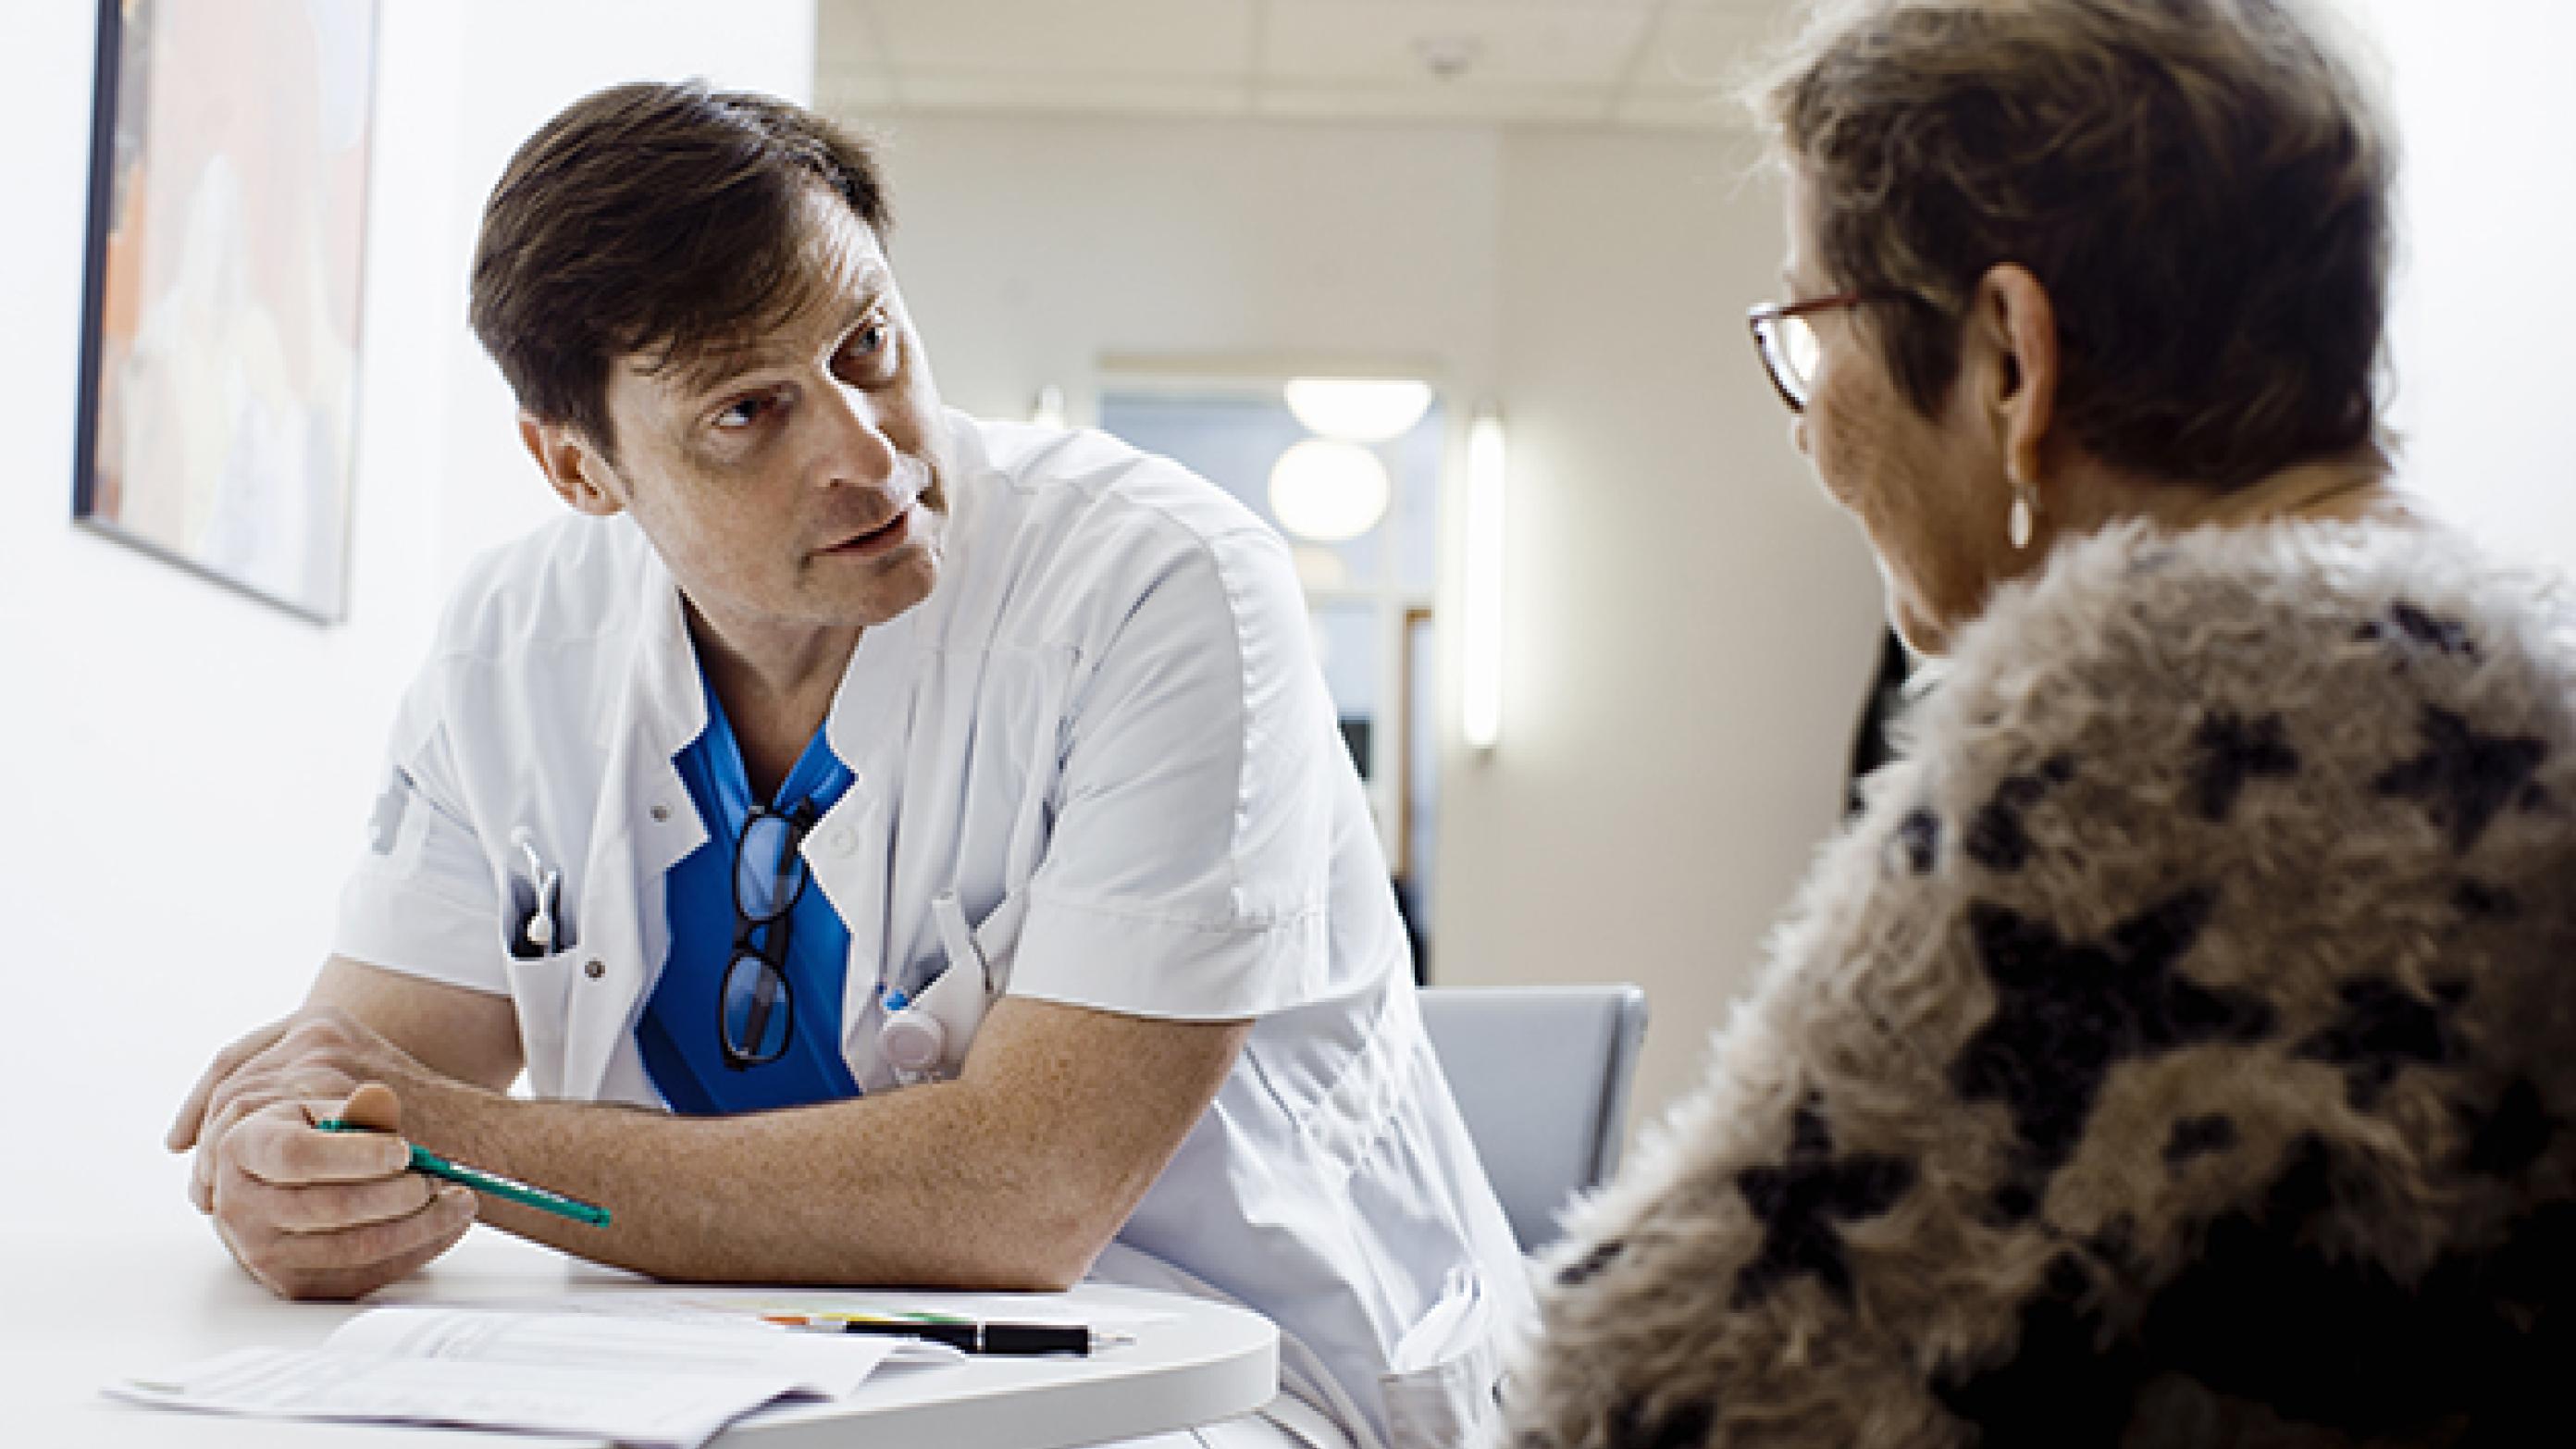 Troels Bygum Knudsen gennemgår medicinlisten og i samarbejde med patienten, foretager han rettelser. Foto: Claus Boesen